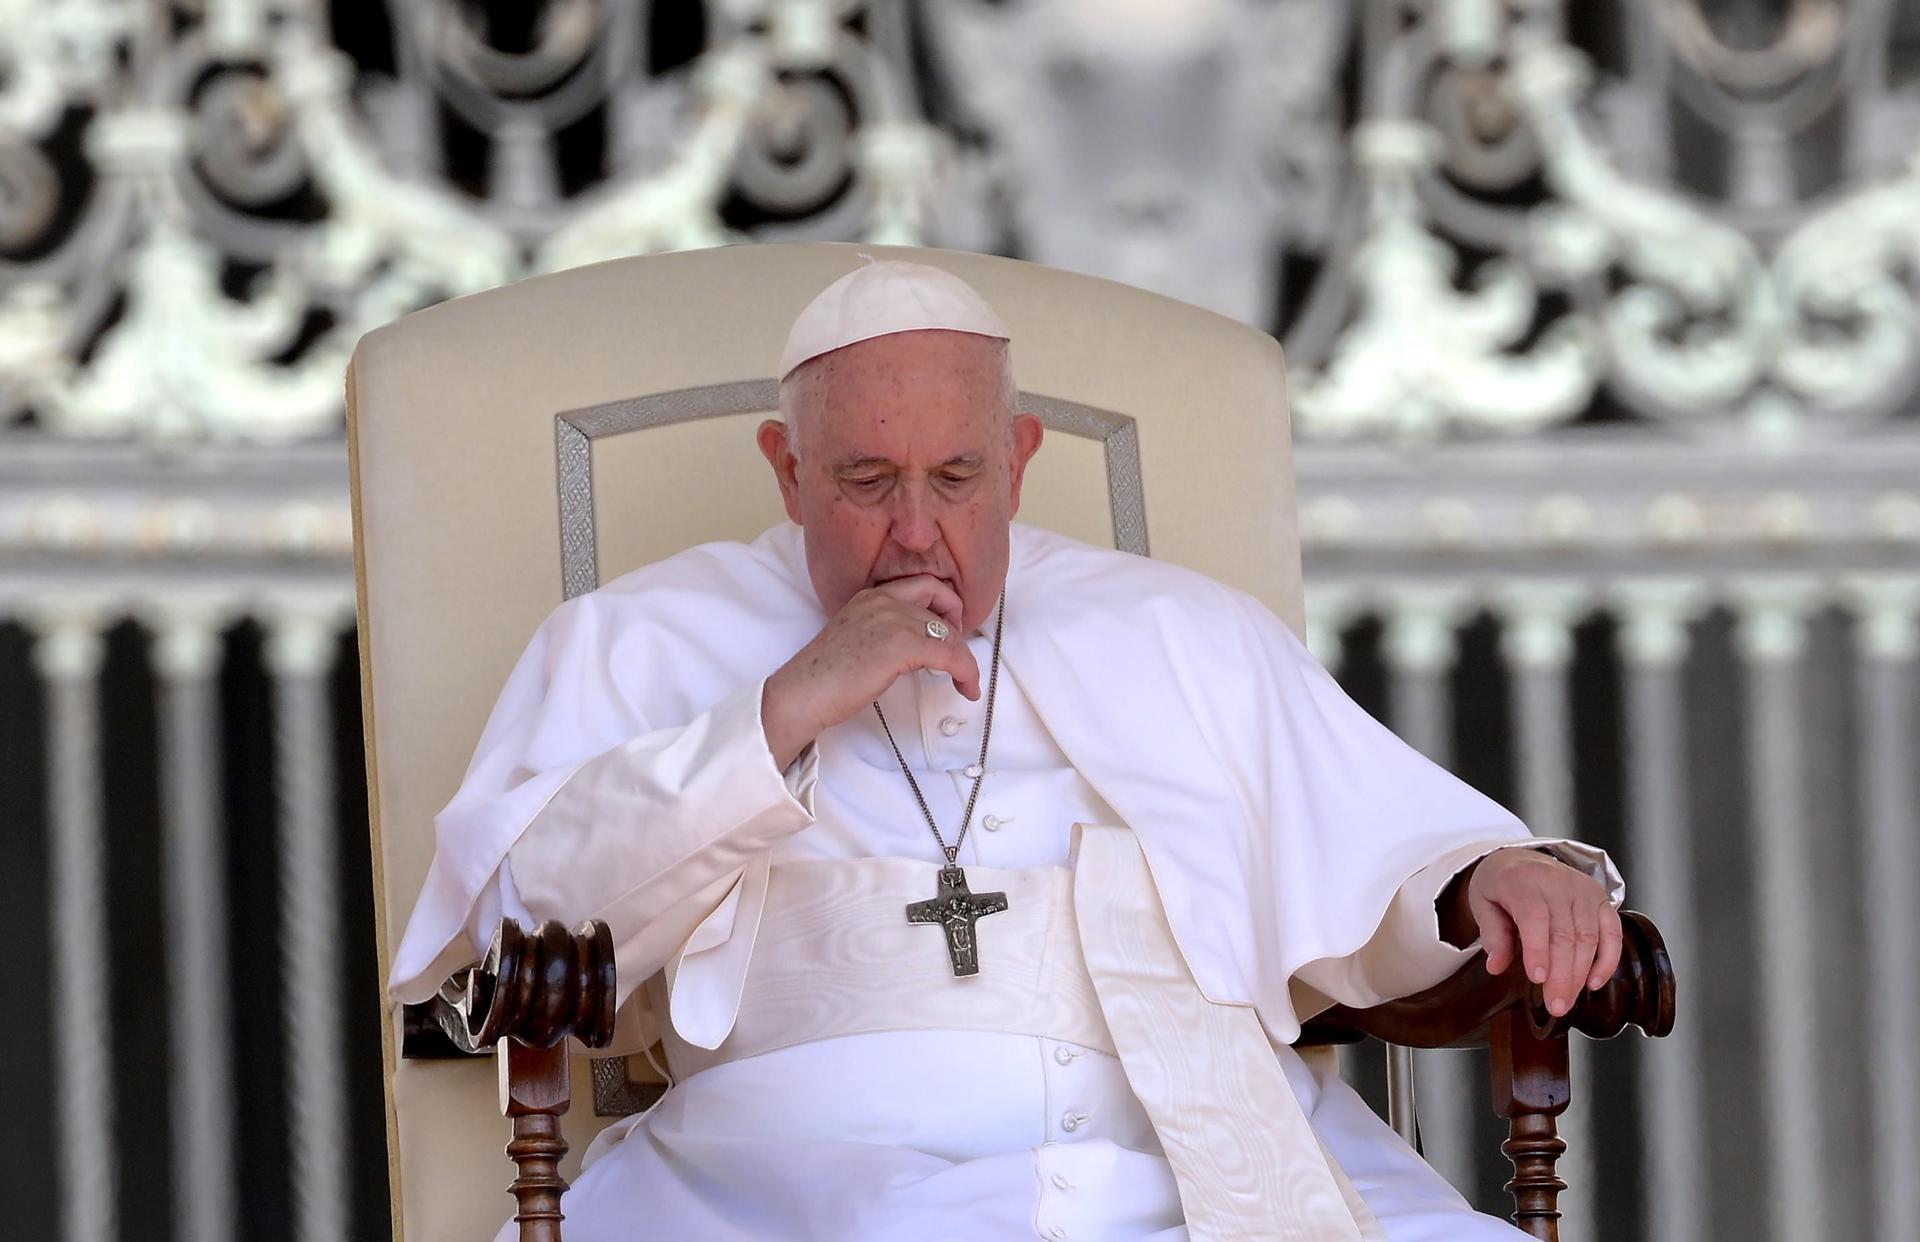 Evangelización en América se hizo “sin respetar a los pueblos indígenas”: papa Francisco